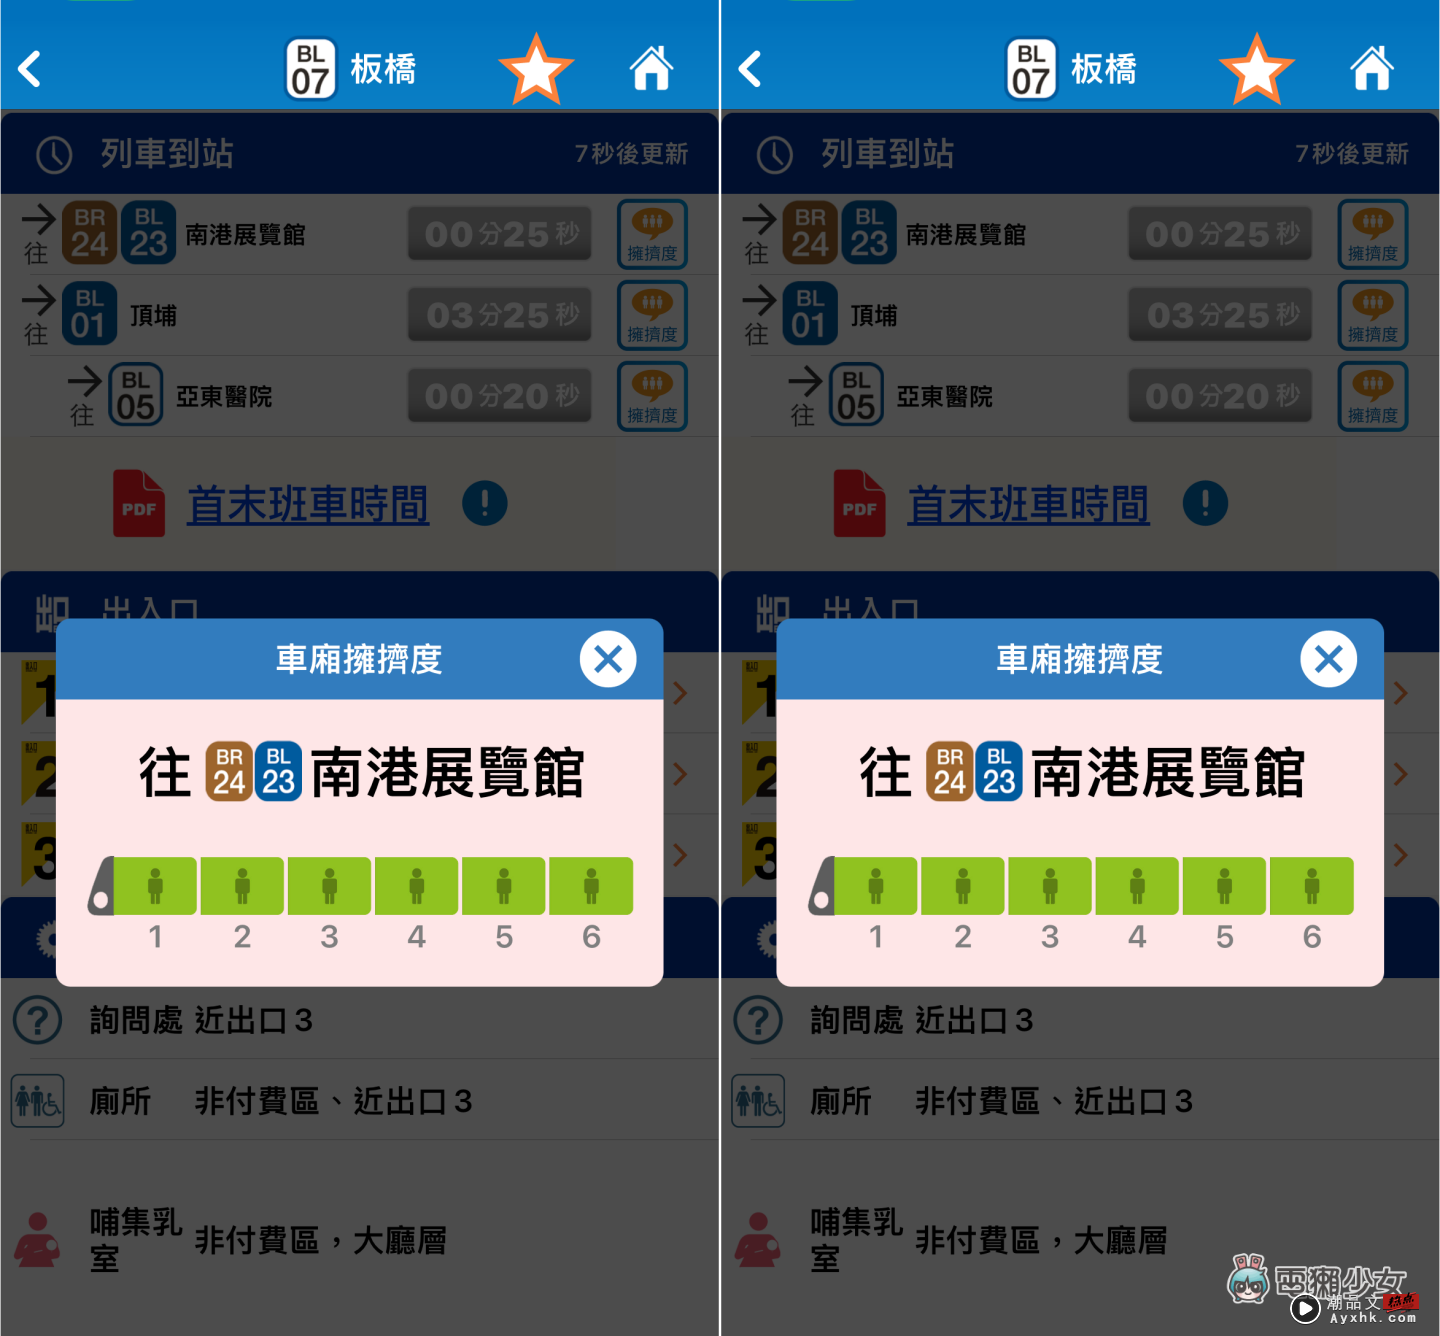 超方便！‘ 台北捷运 GO ’可查询列车拥挤程度、各站置物柜剩余数量、即时显示到站时间 数码科技 图4张